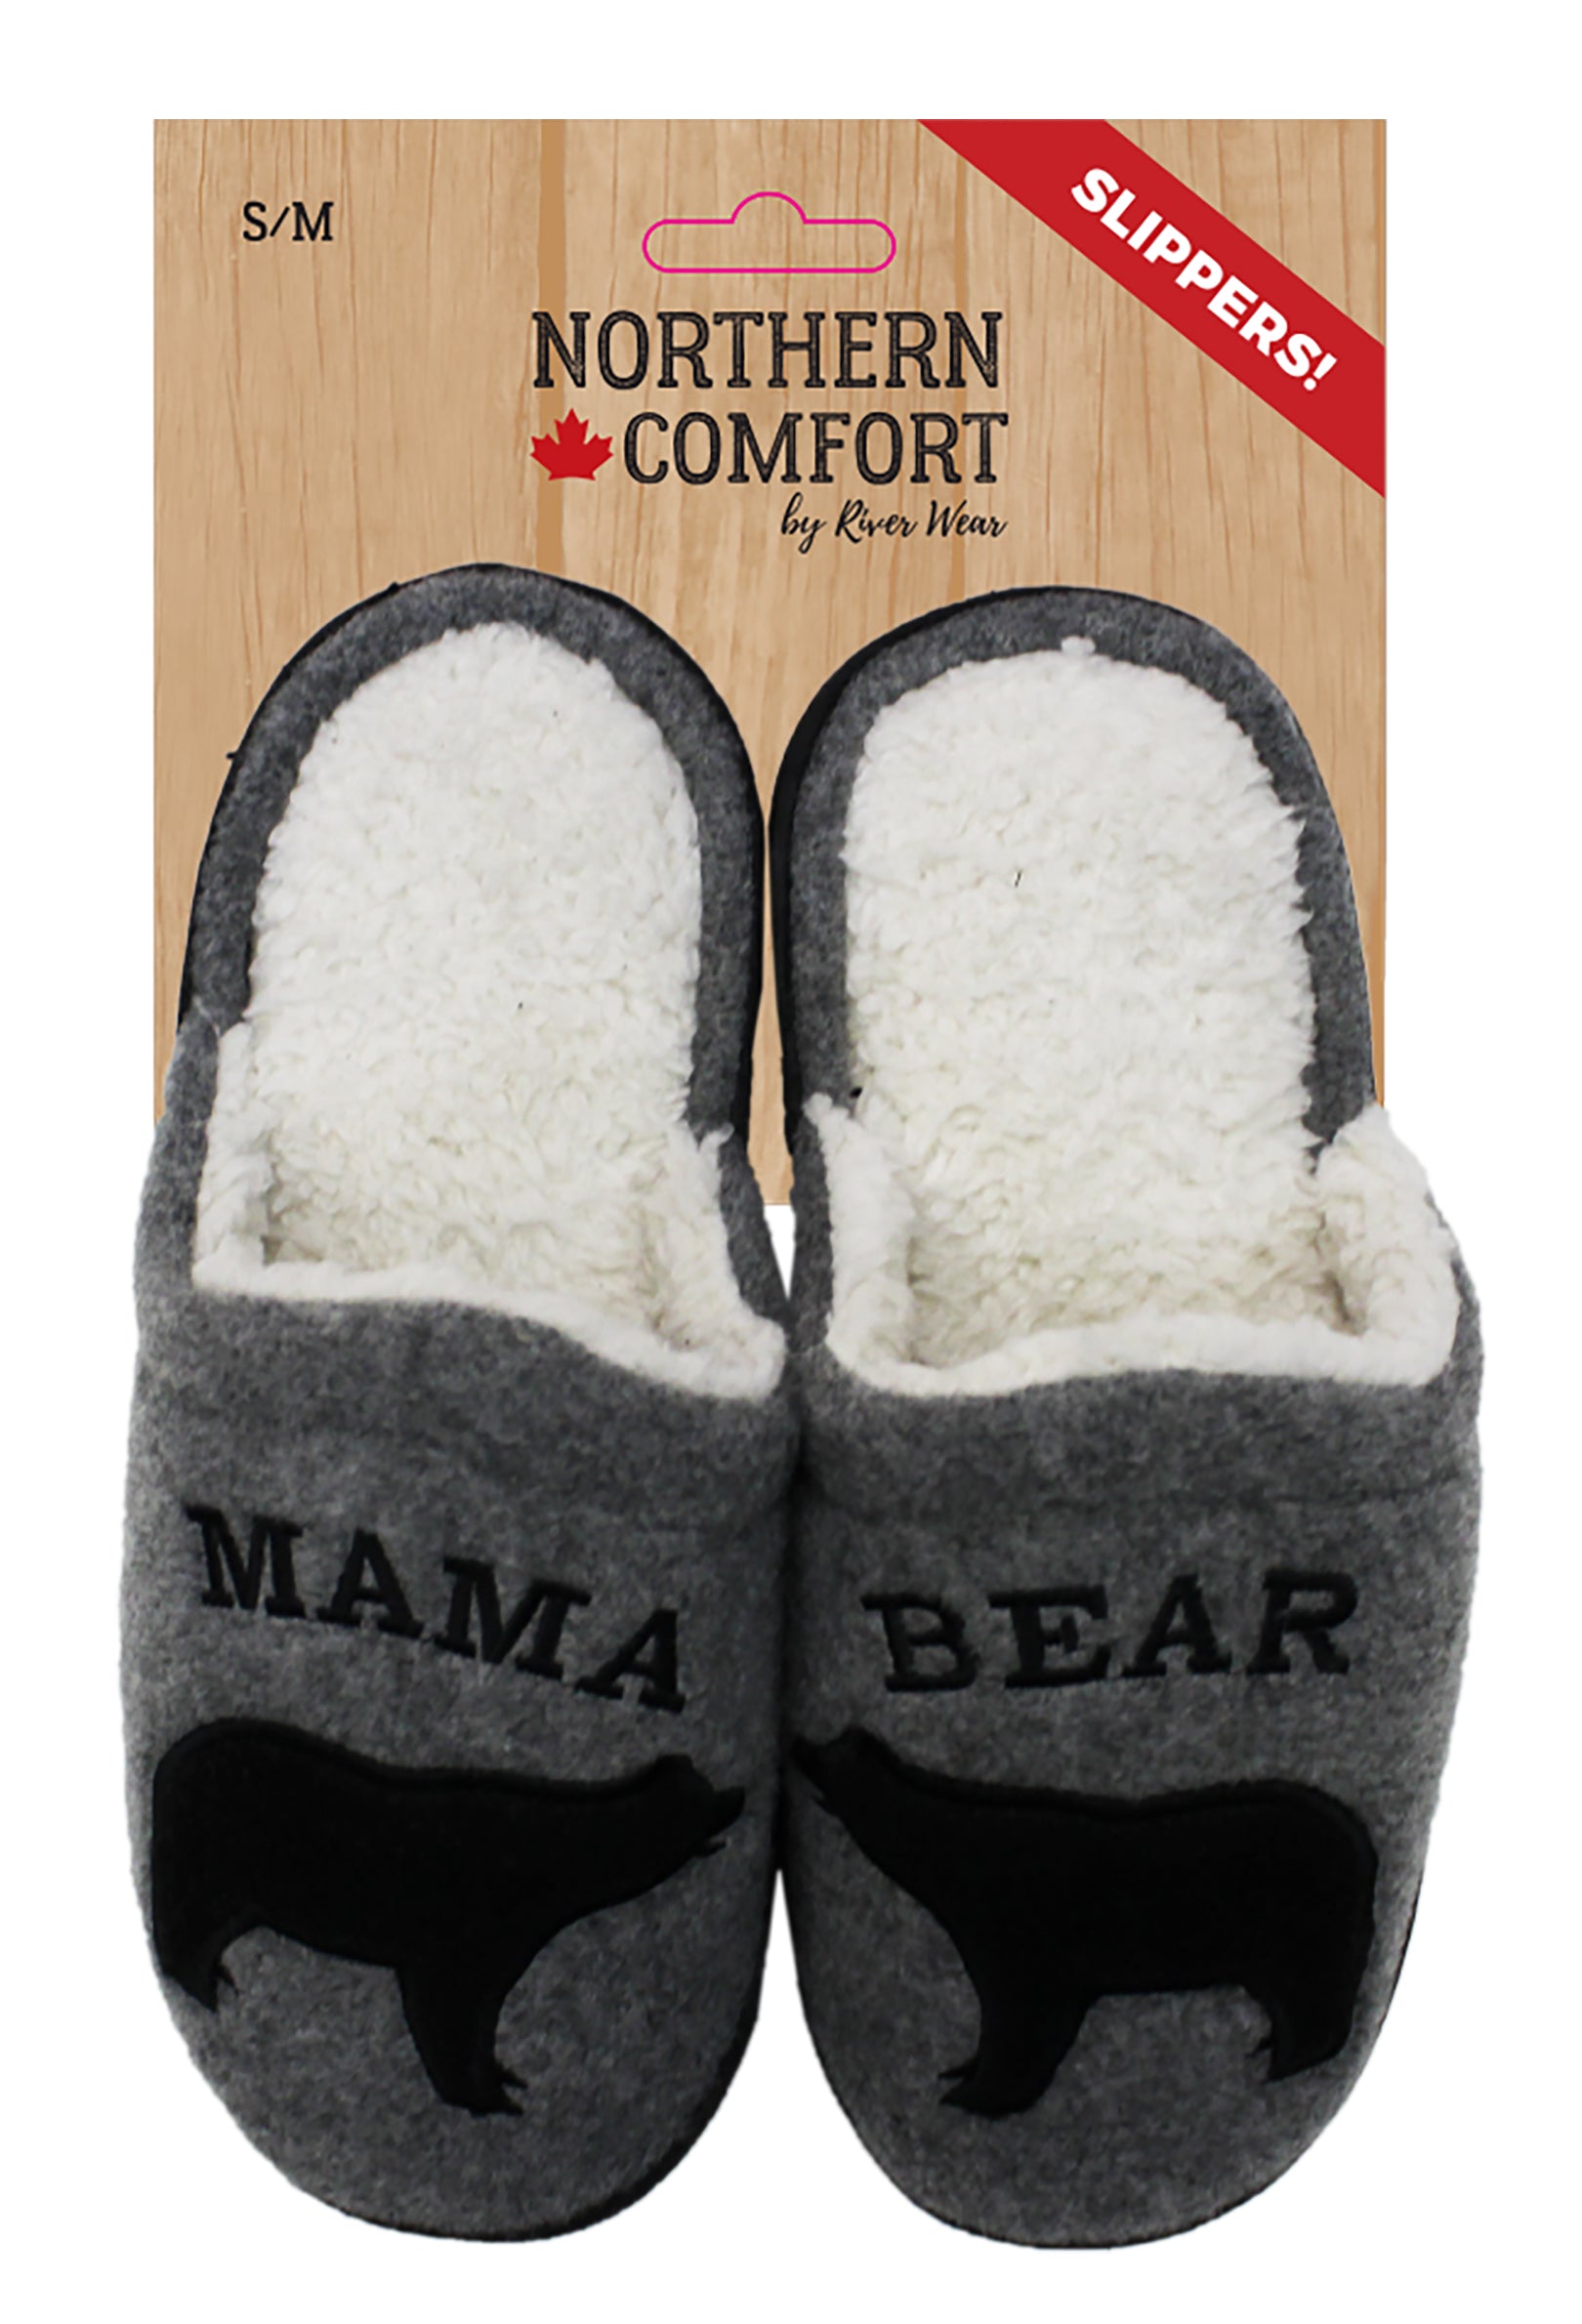 mama bear papa bear baby bear slippers